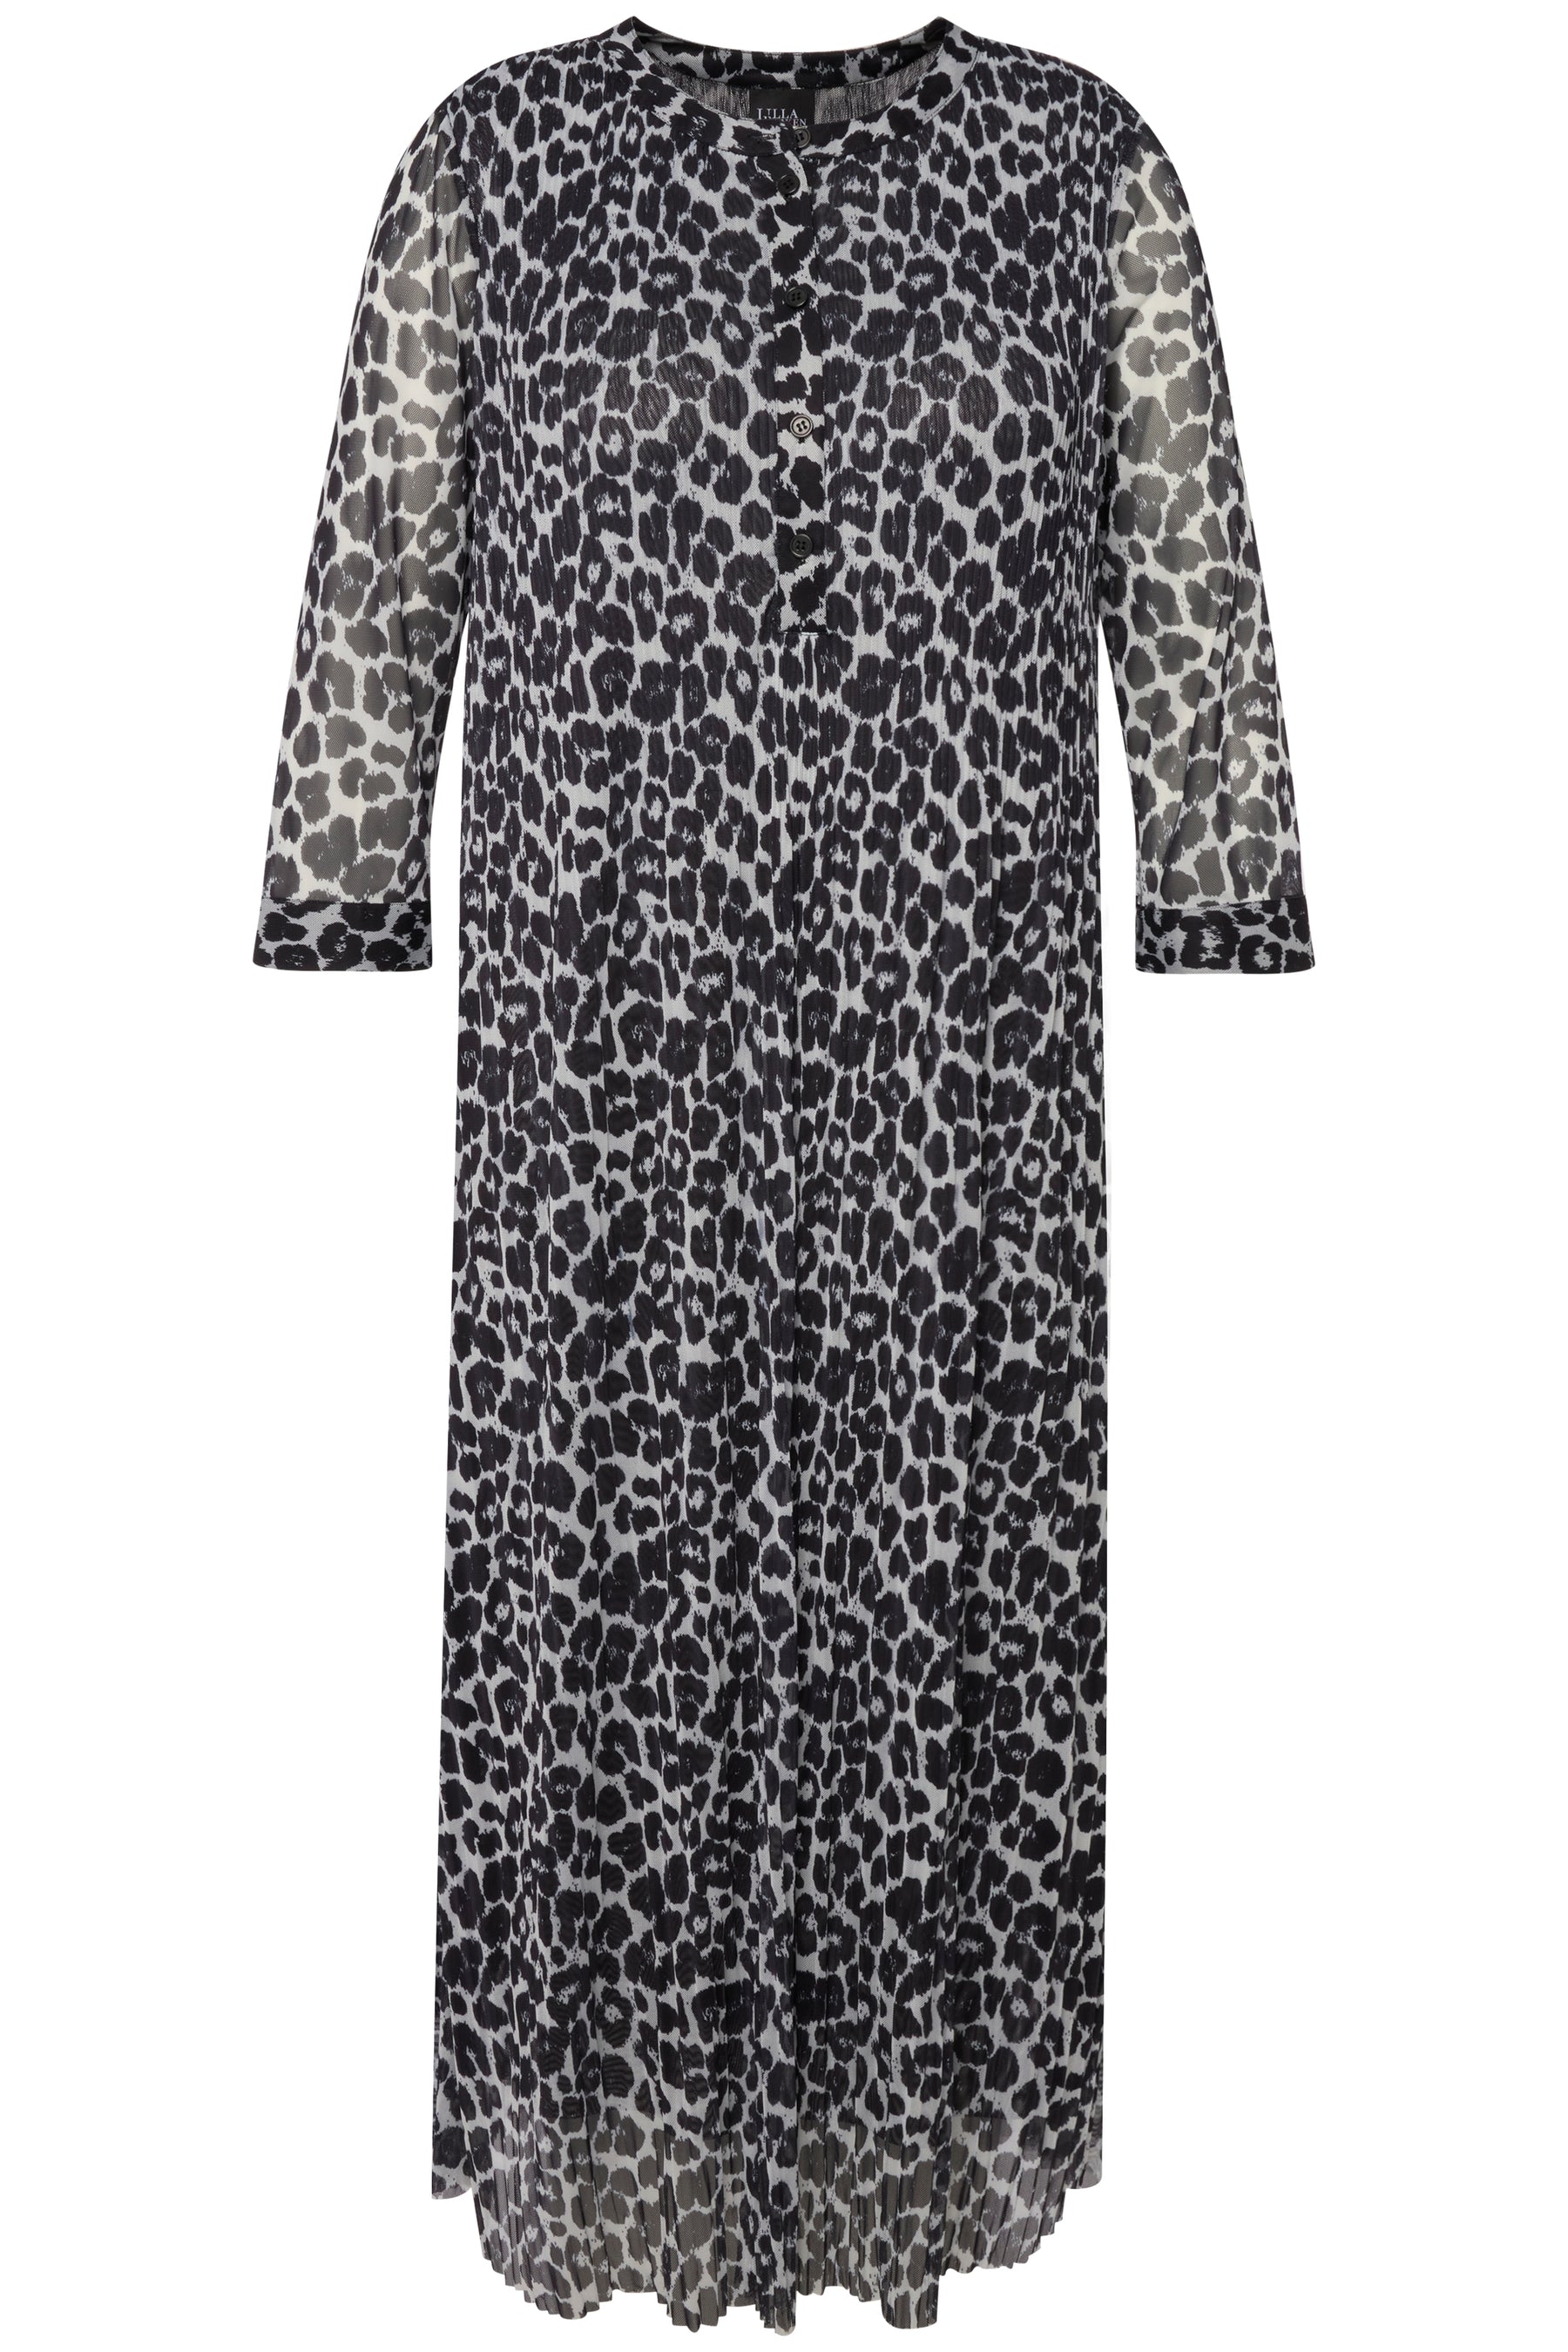 Ulla Popken Sheer Leopard Dress